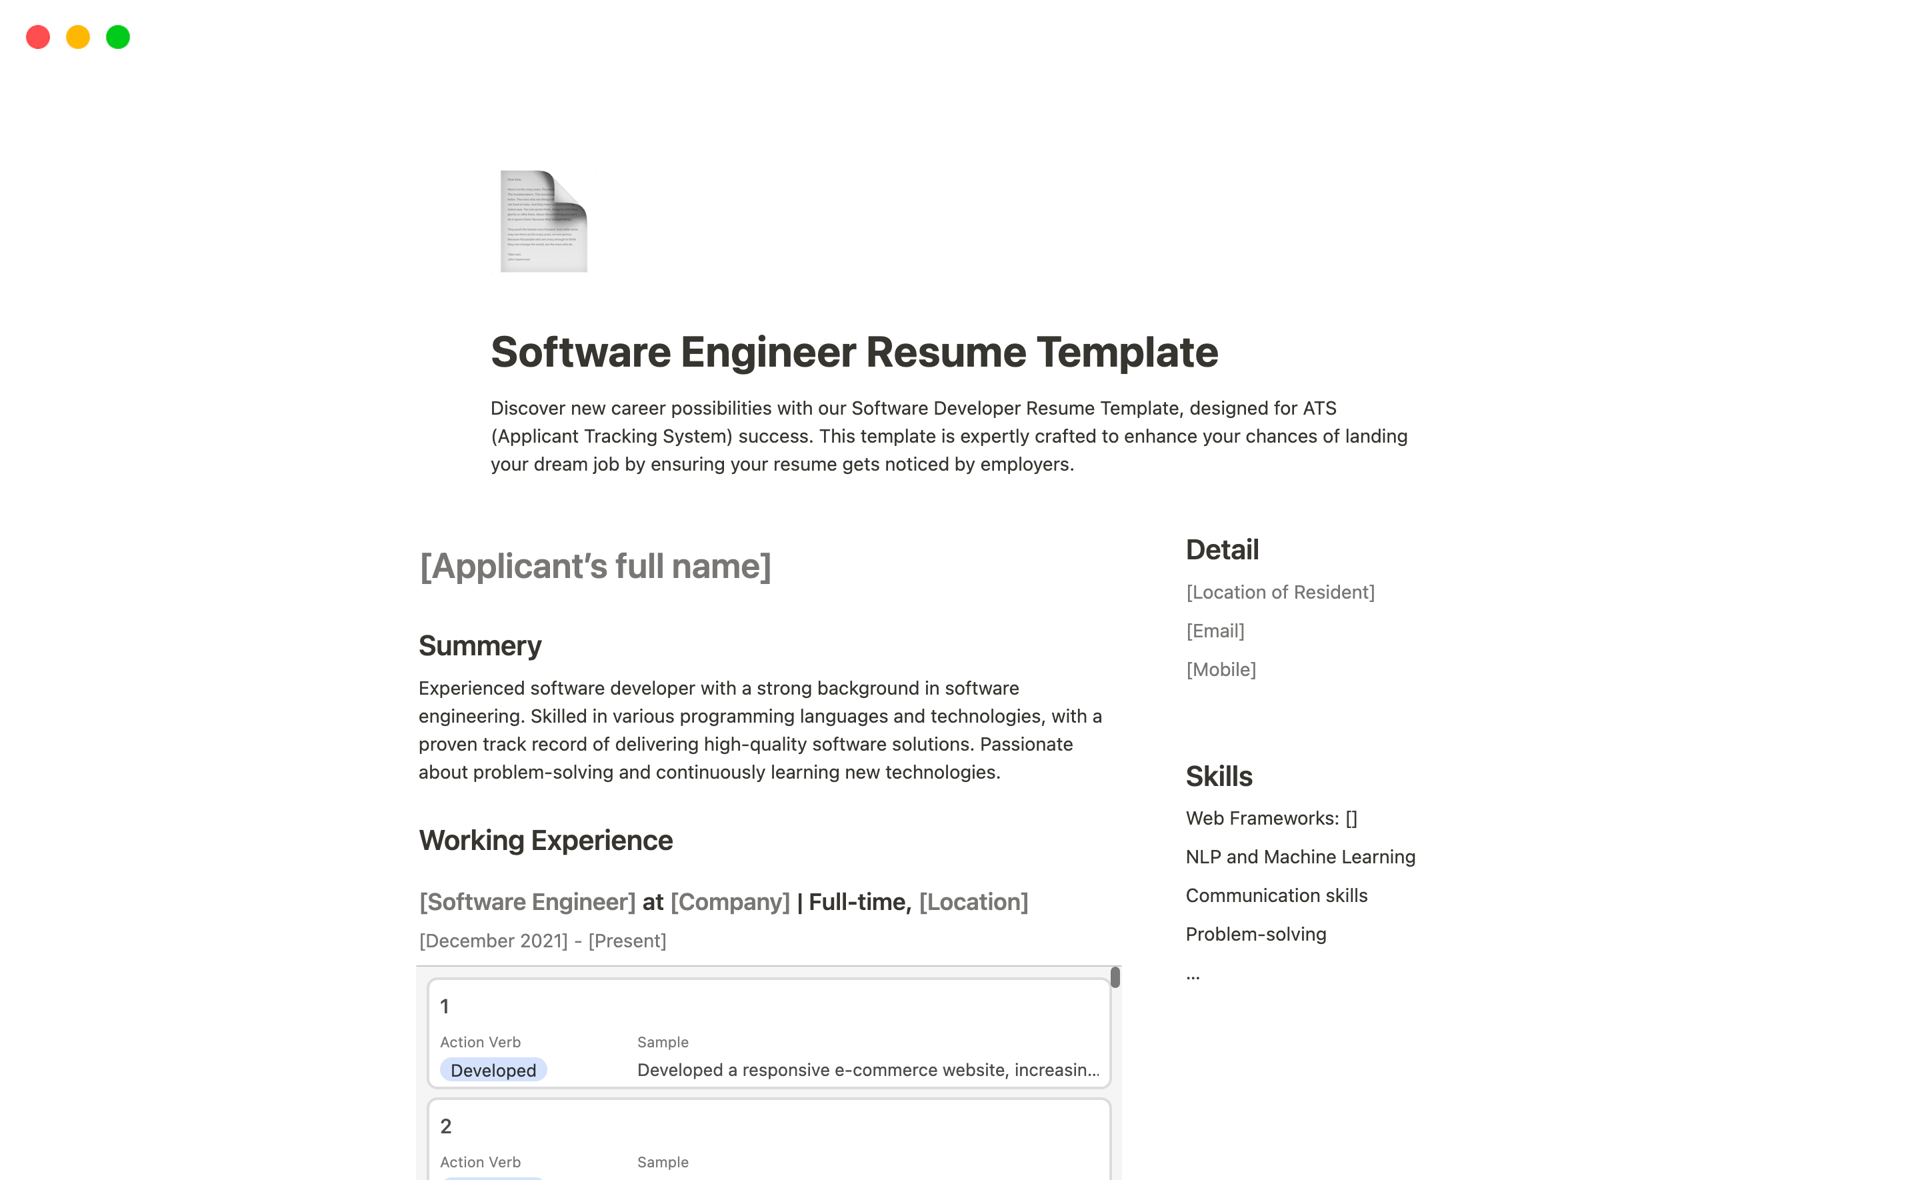 Vista previa de una plantilla para Software Engineer Resume